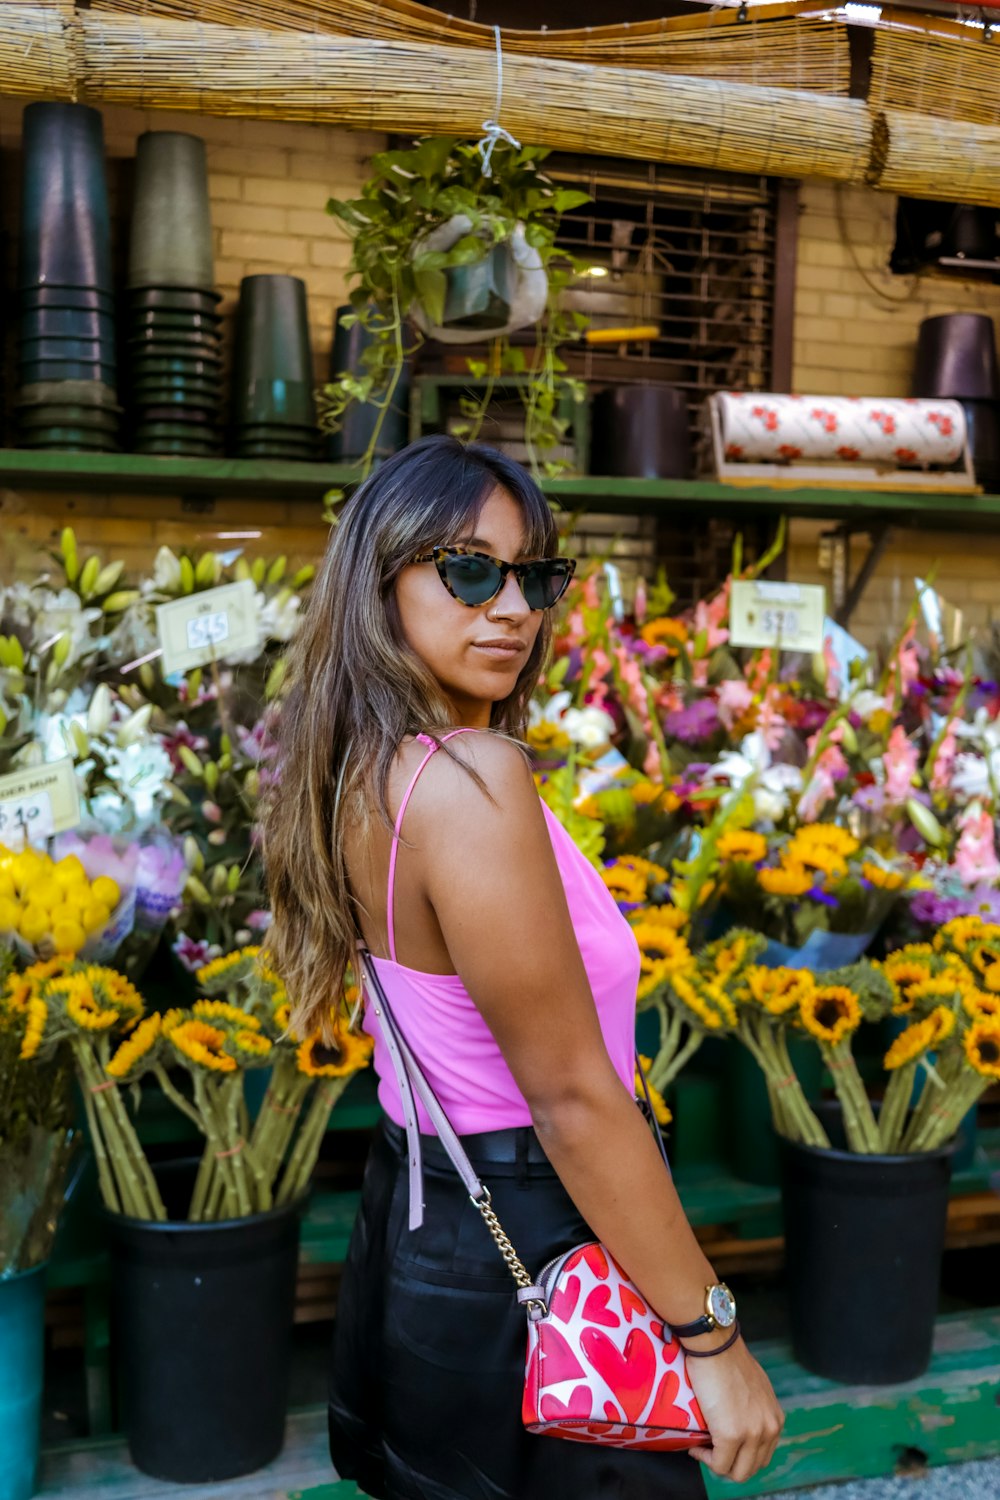 Femme en débardeur rose portant des lunettes de soleil noires debout près de fleurs